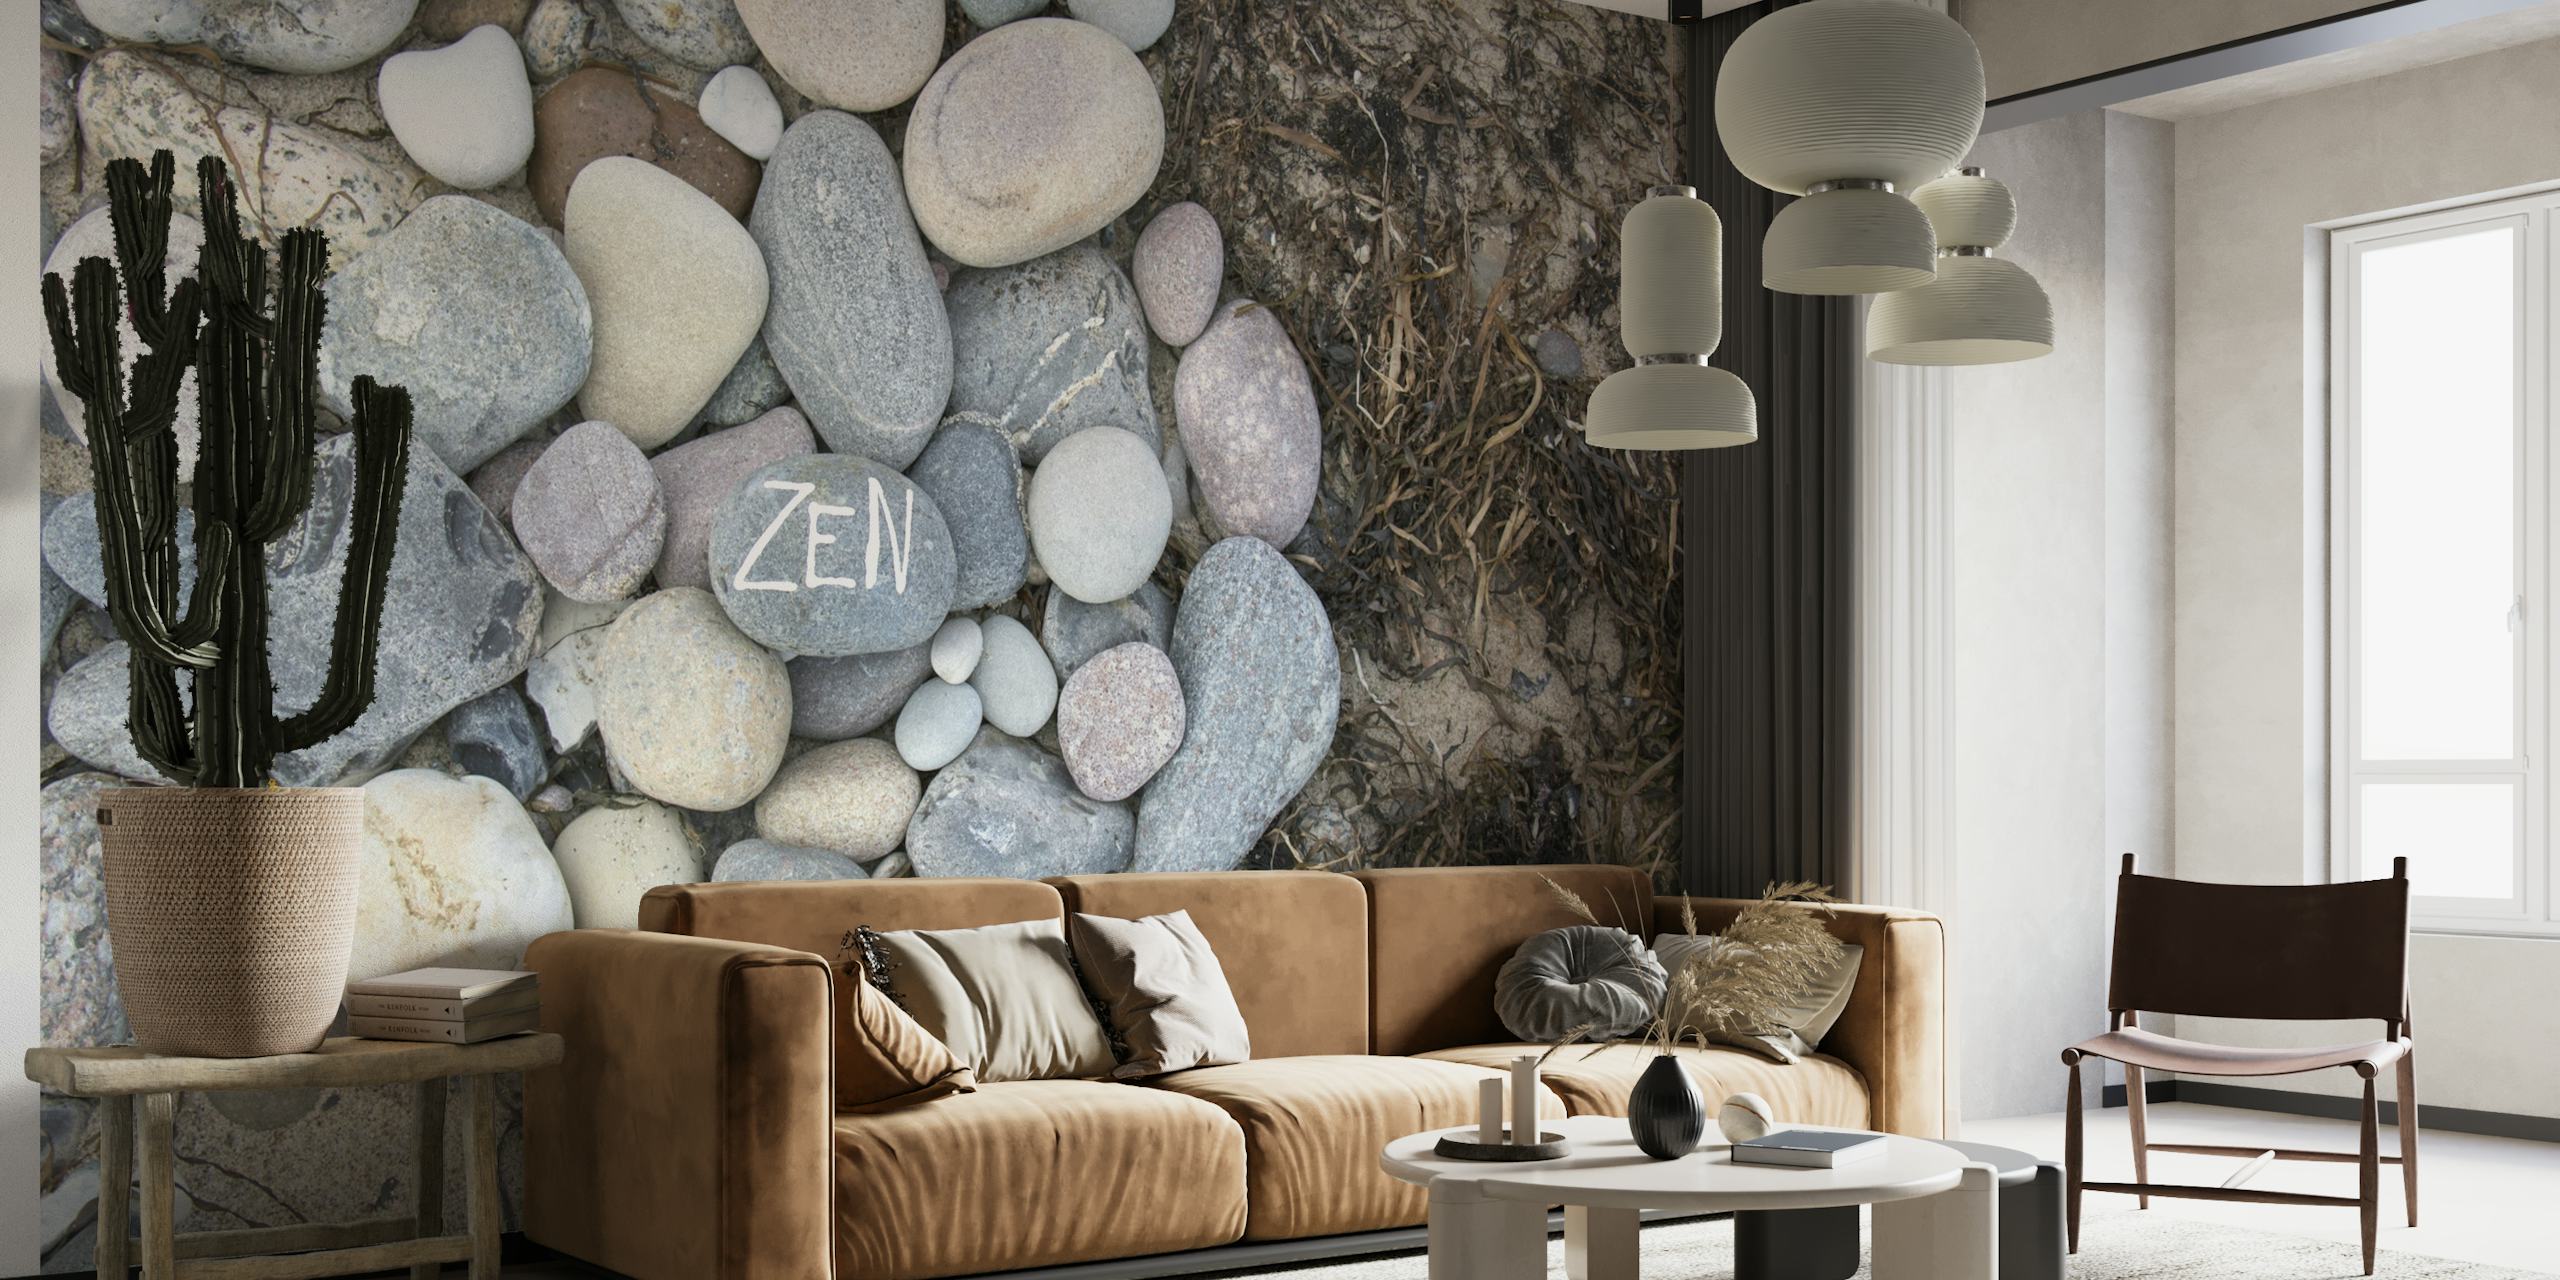 Zen Pebble Beah wallpaper